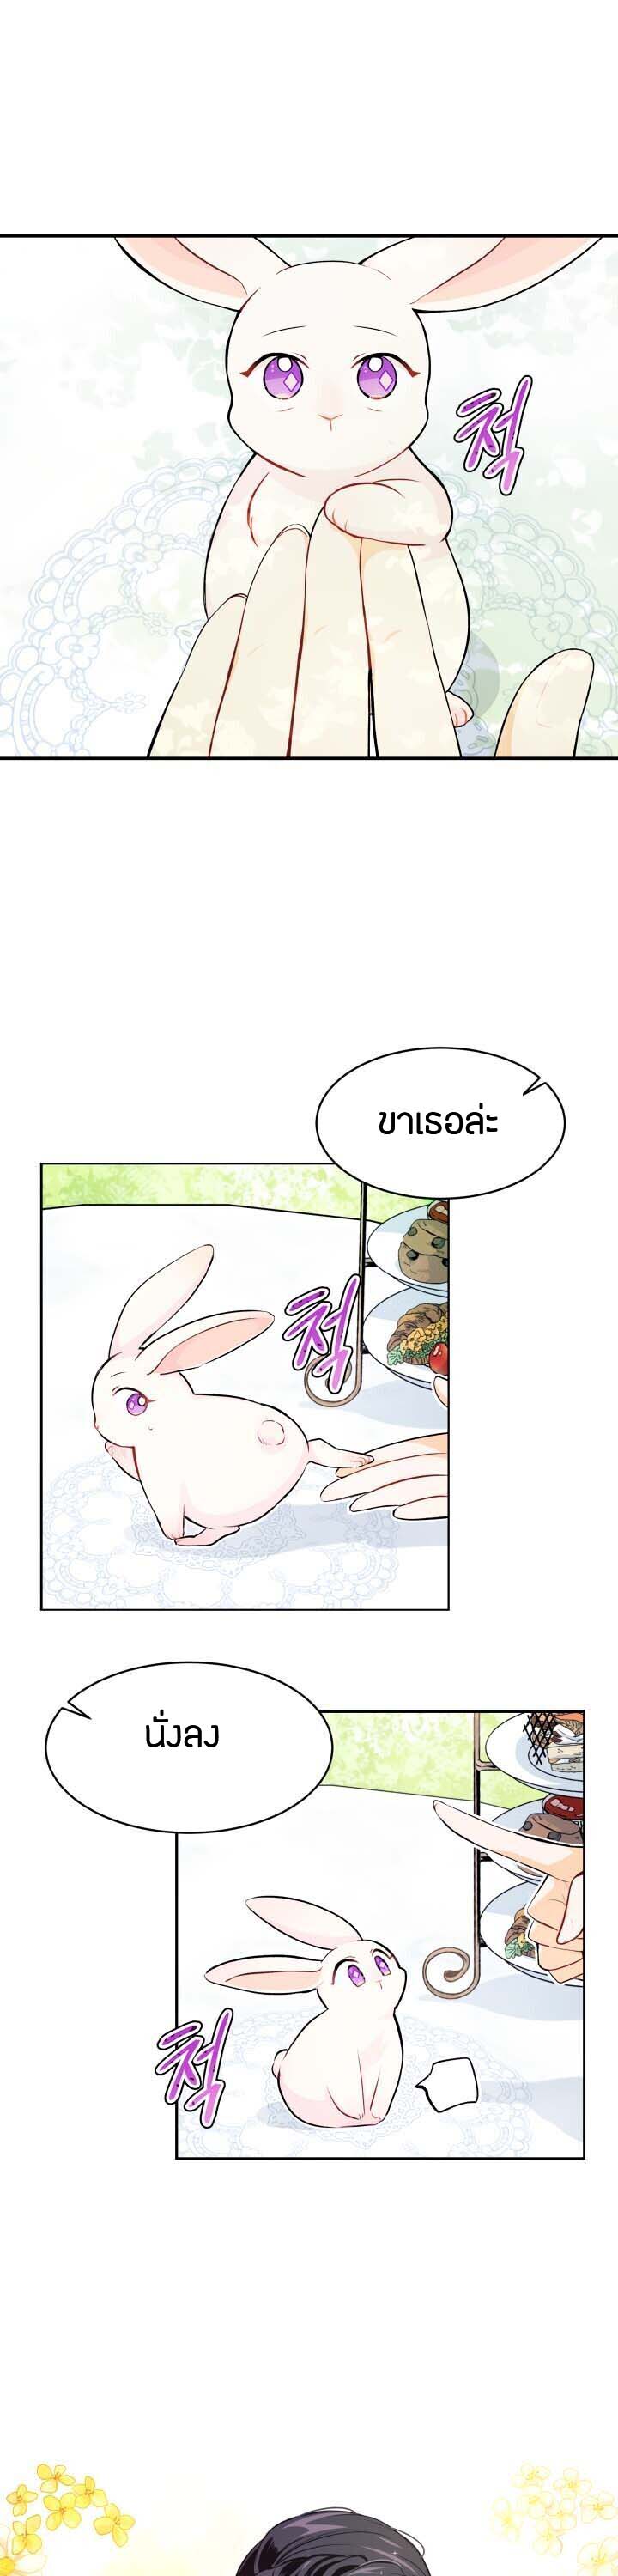 rabbit5 13